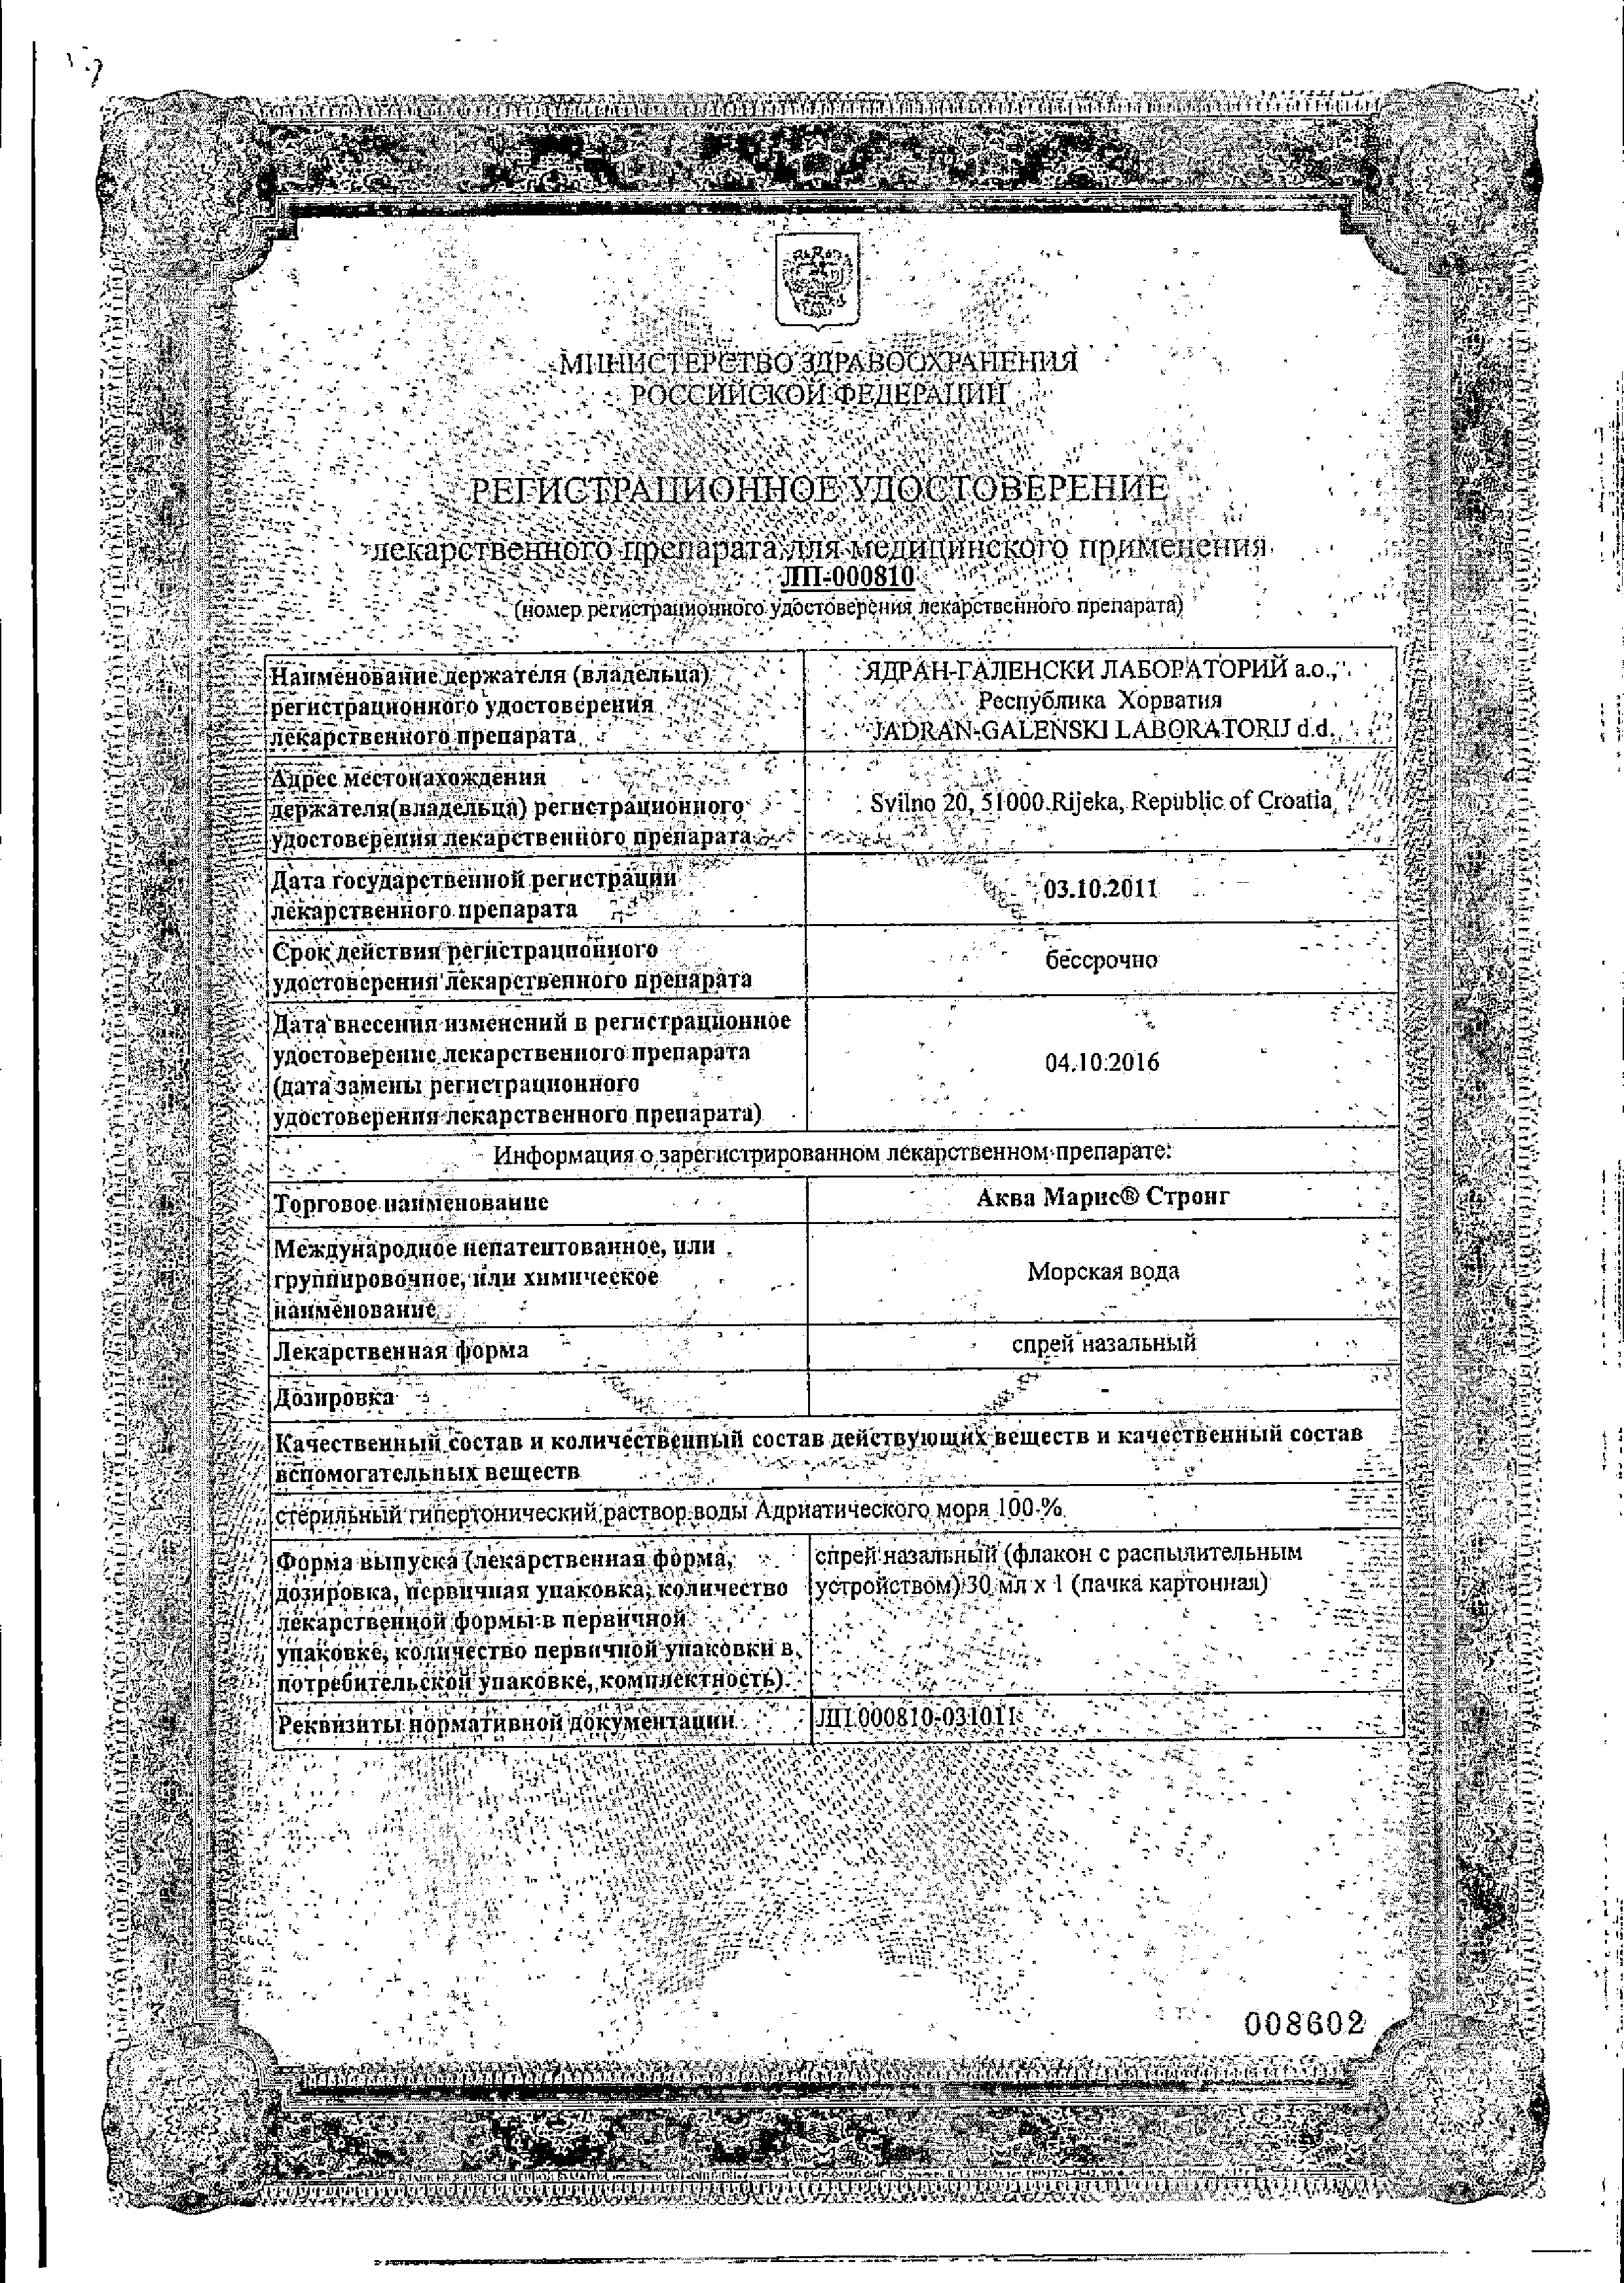 Аква Марис Стронг сертификат